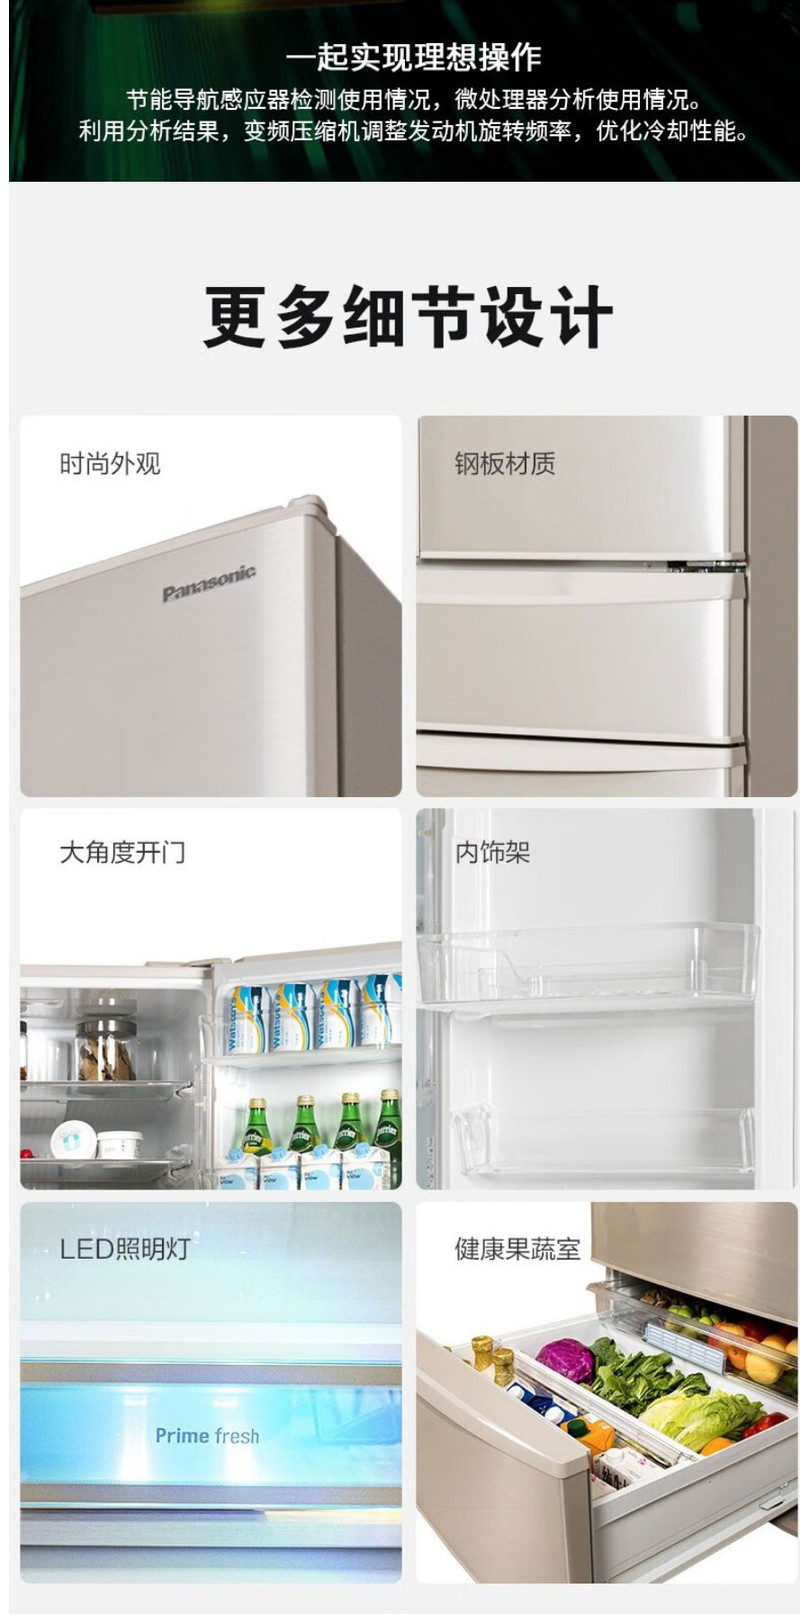 松下/PANASONIC 装进口六门冰箱 带变温自动独立制冰 NR-F604VT-N5